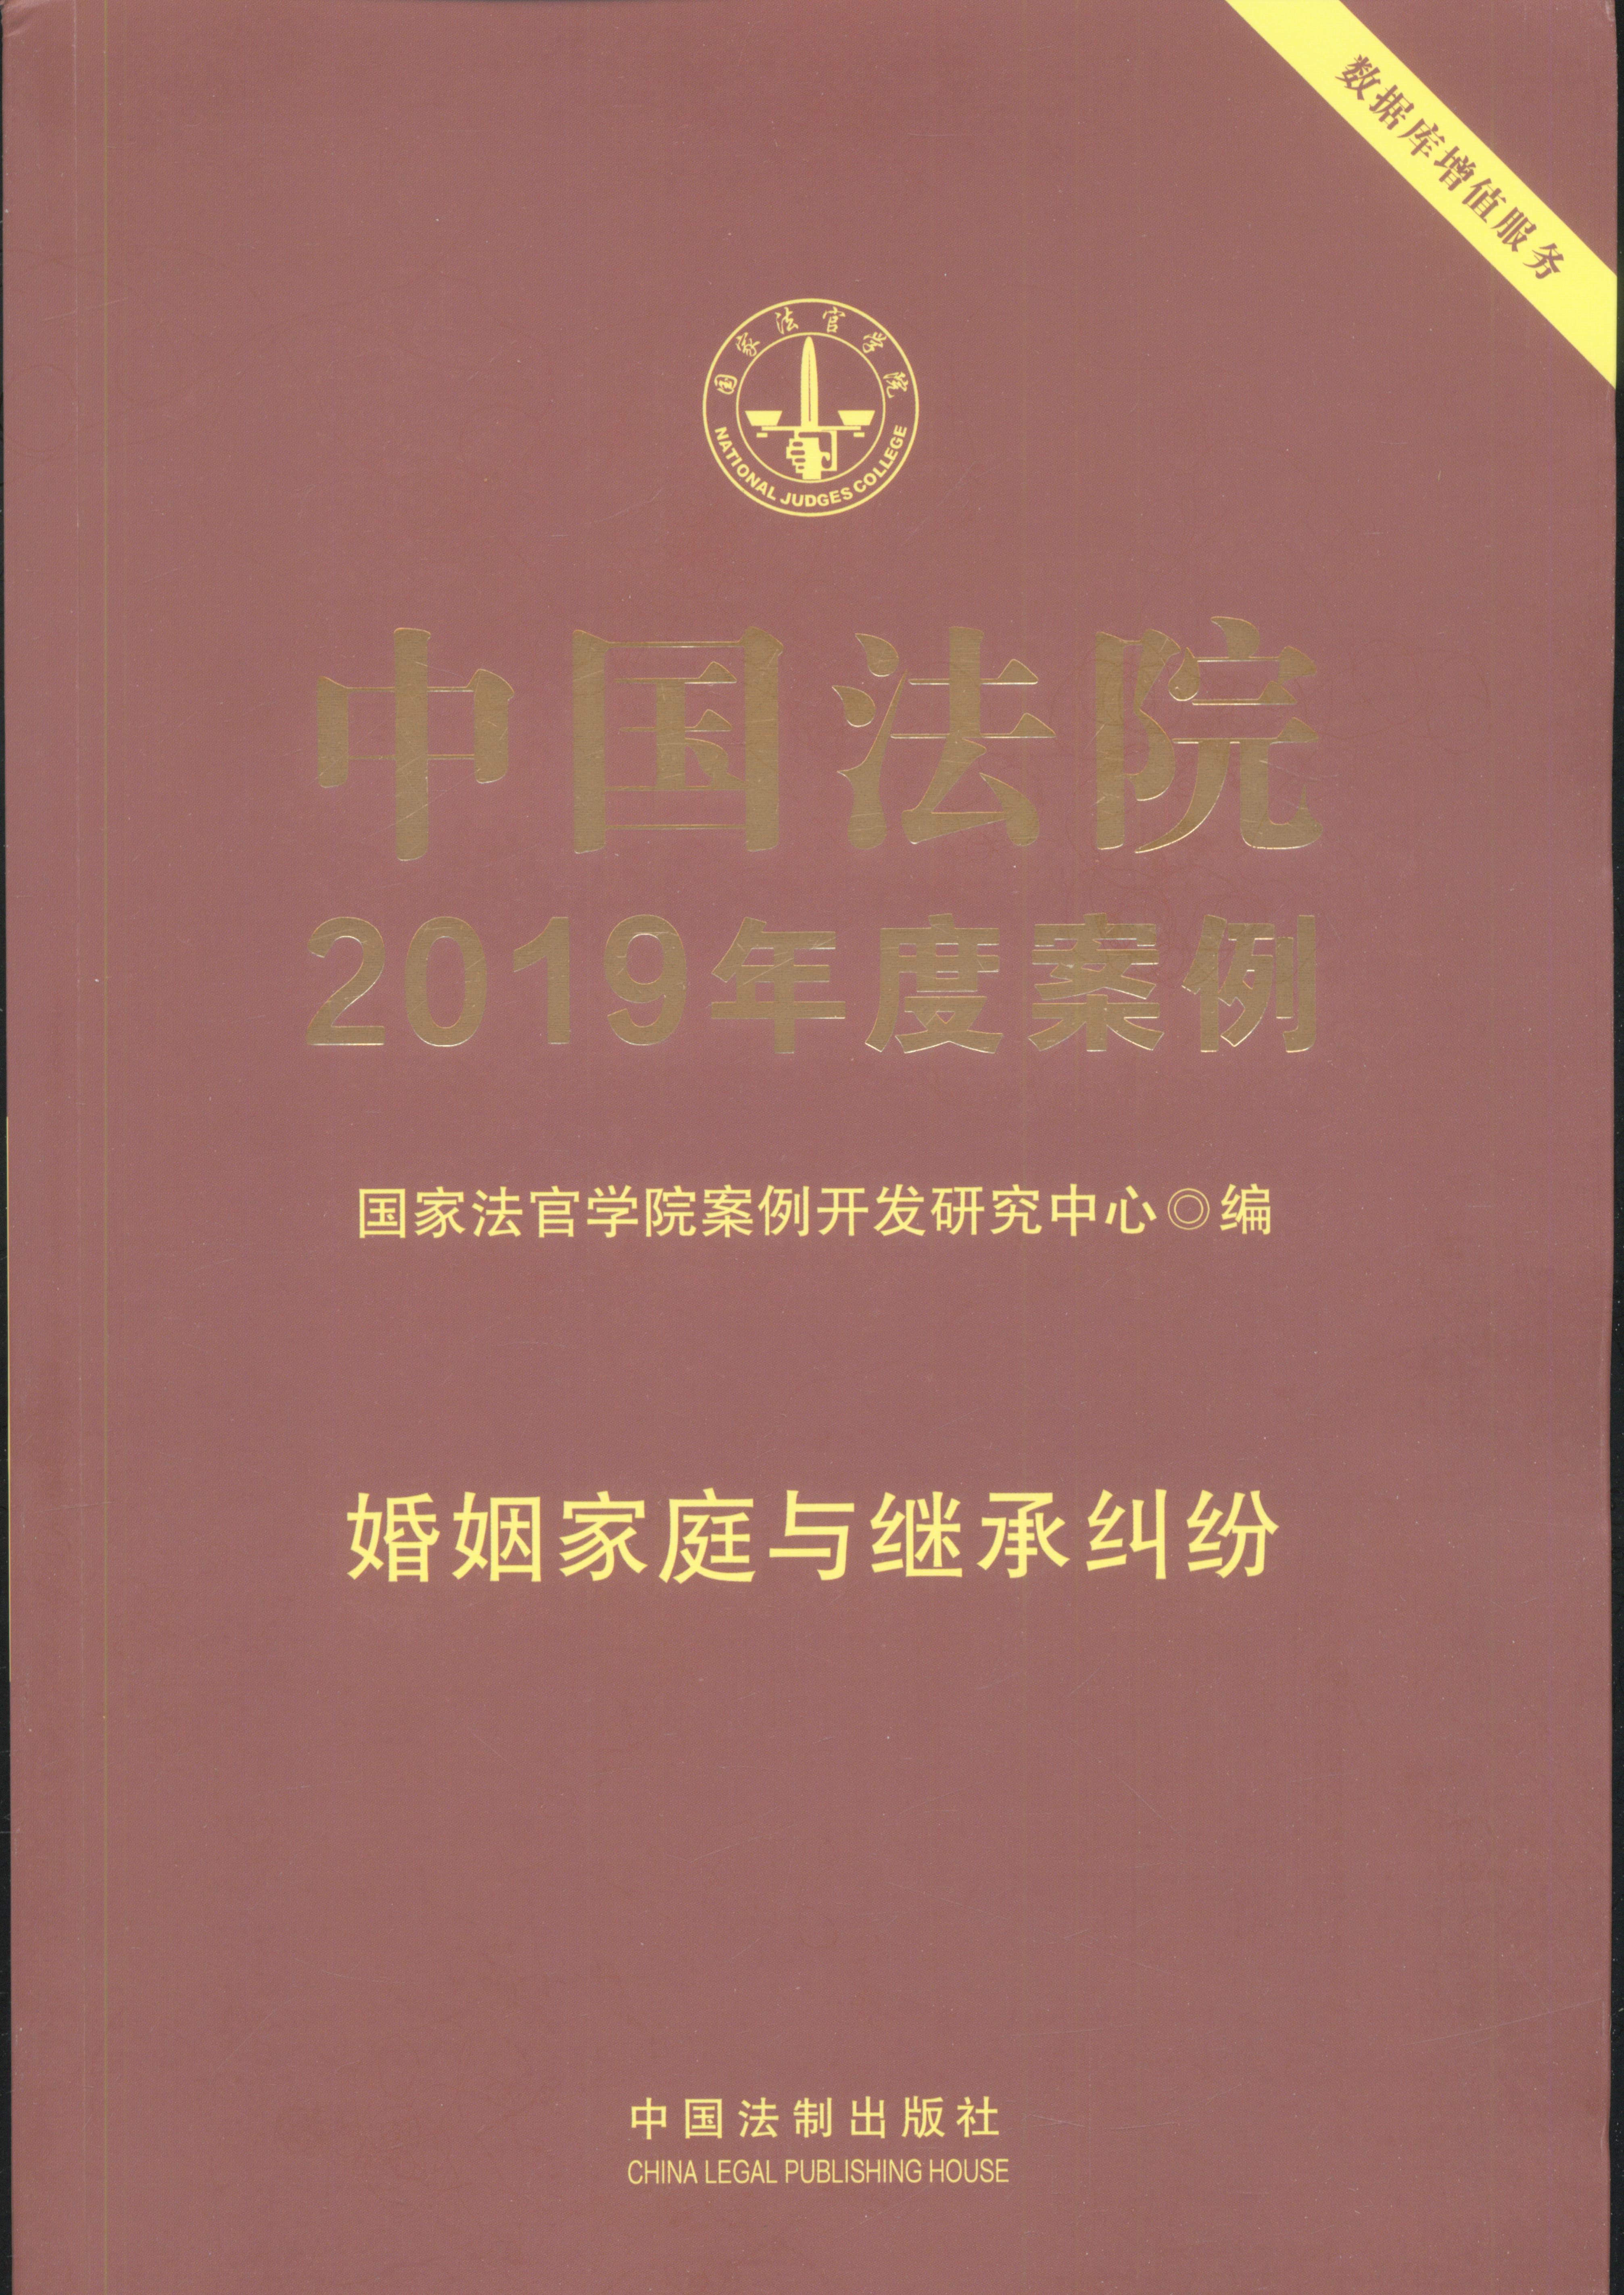 中国法院2019年度案例·婚姻家庭与继承纠纷